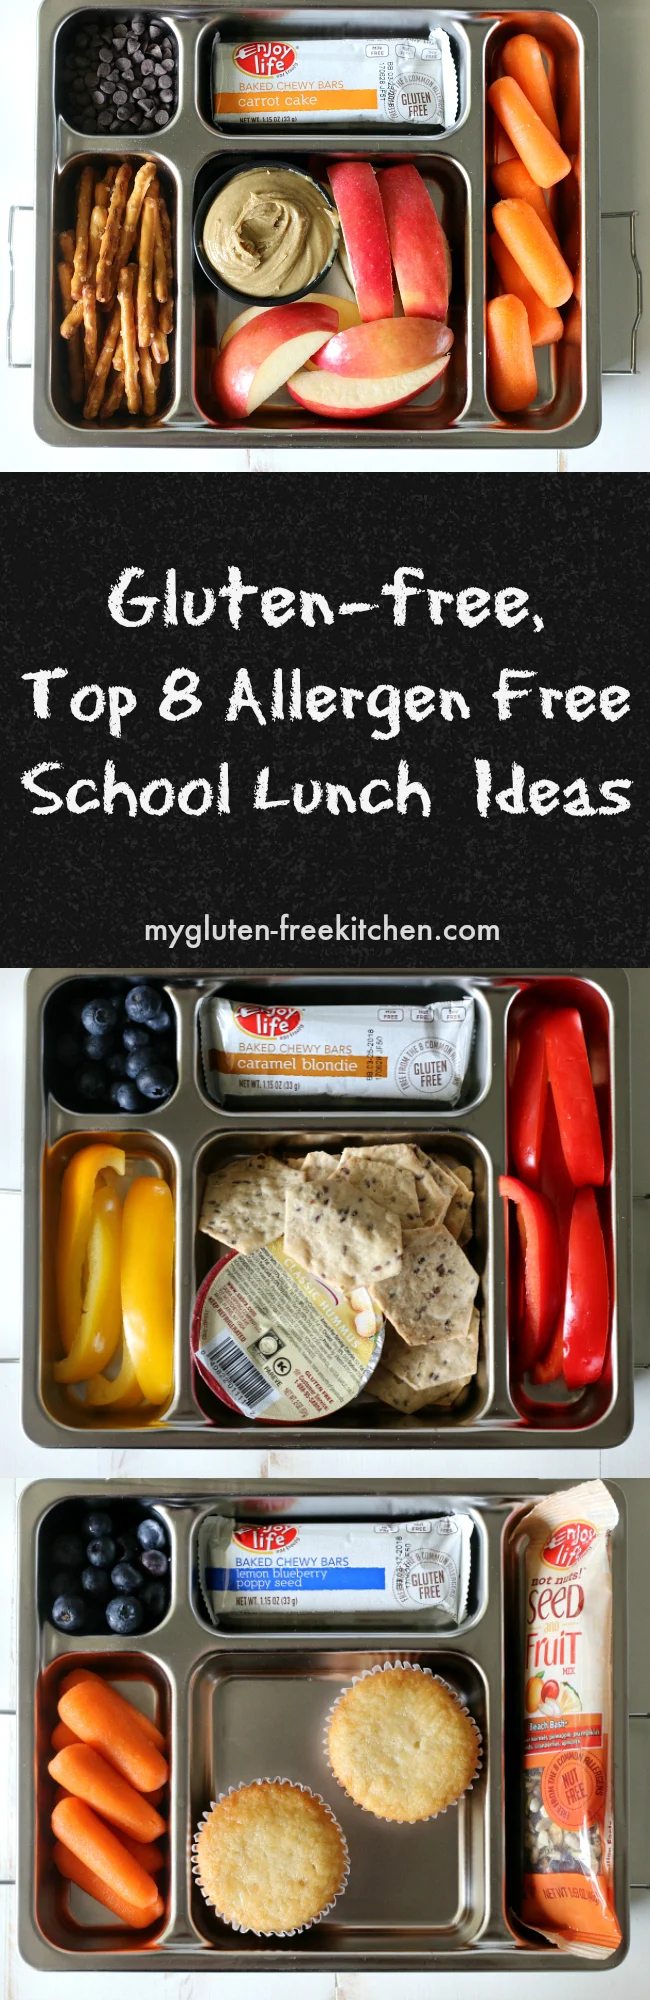 Gluten-free Top 8 allergen free school lunch ideas